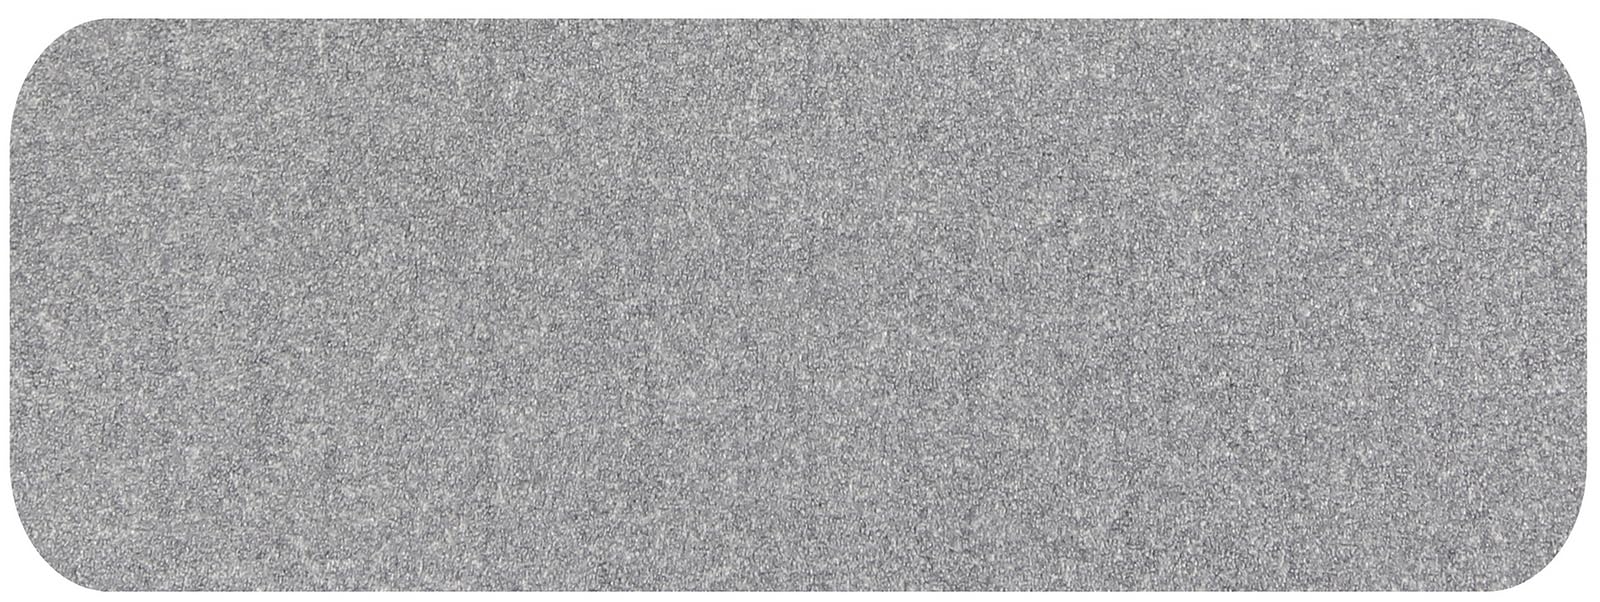 Salonloewe Fußmatte 030x075 cm Blend Platin Fußabtreter, innen, außen, Schmutzfangmatte, Sauberlauf-Teppich